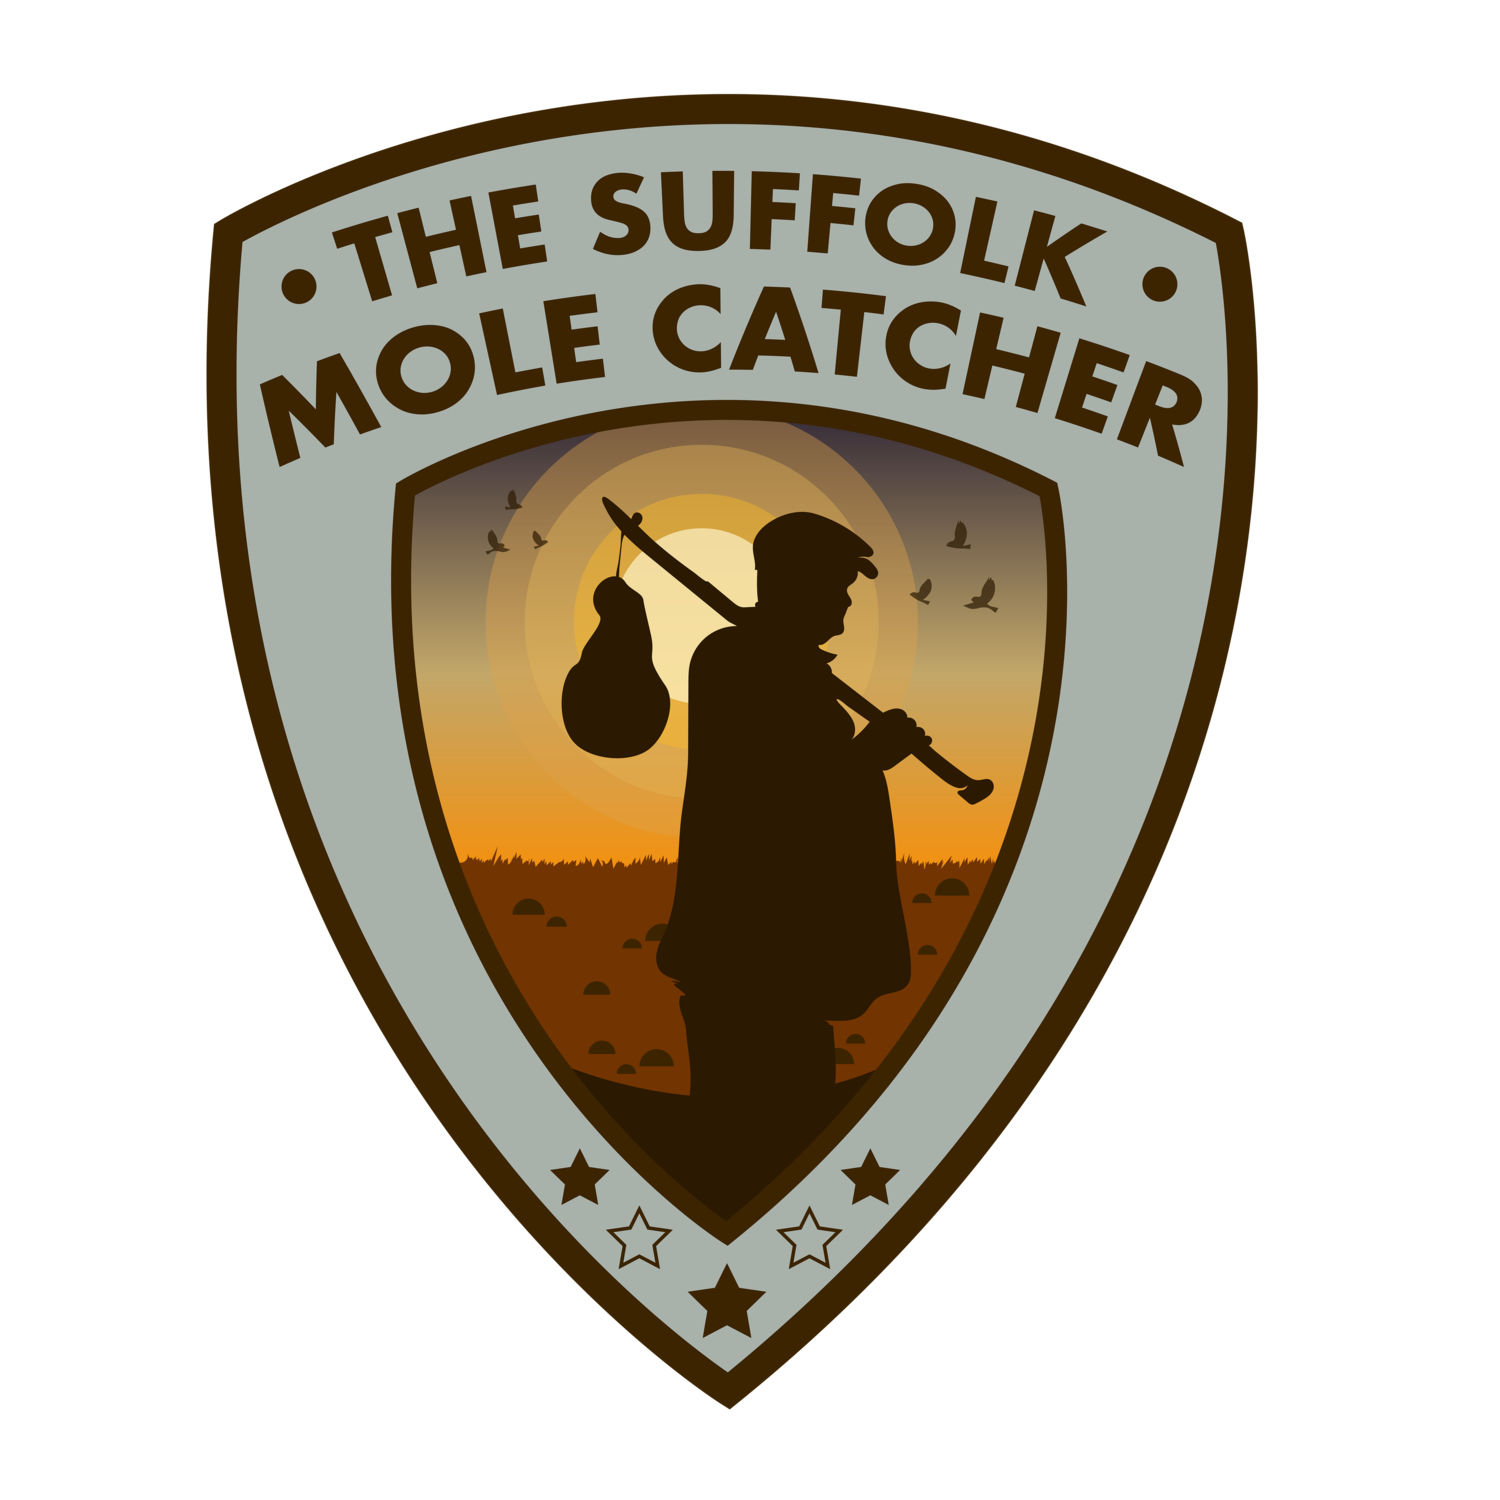 The Suffolk Mole Catcher